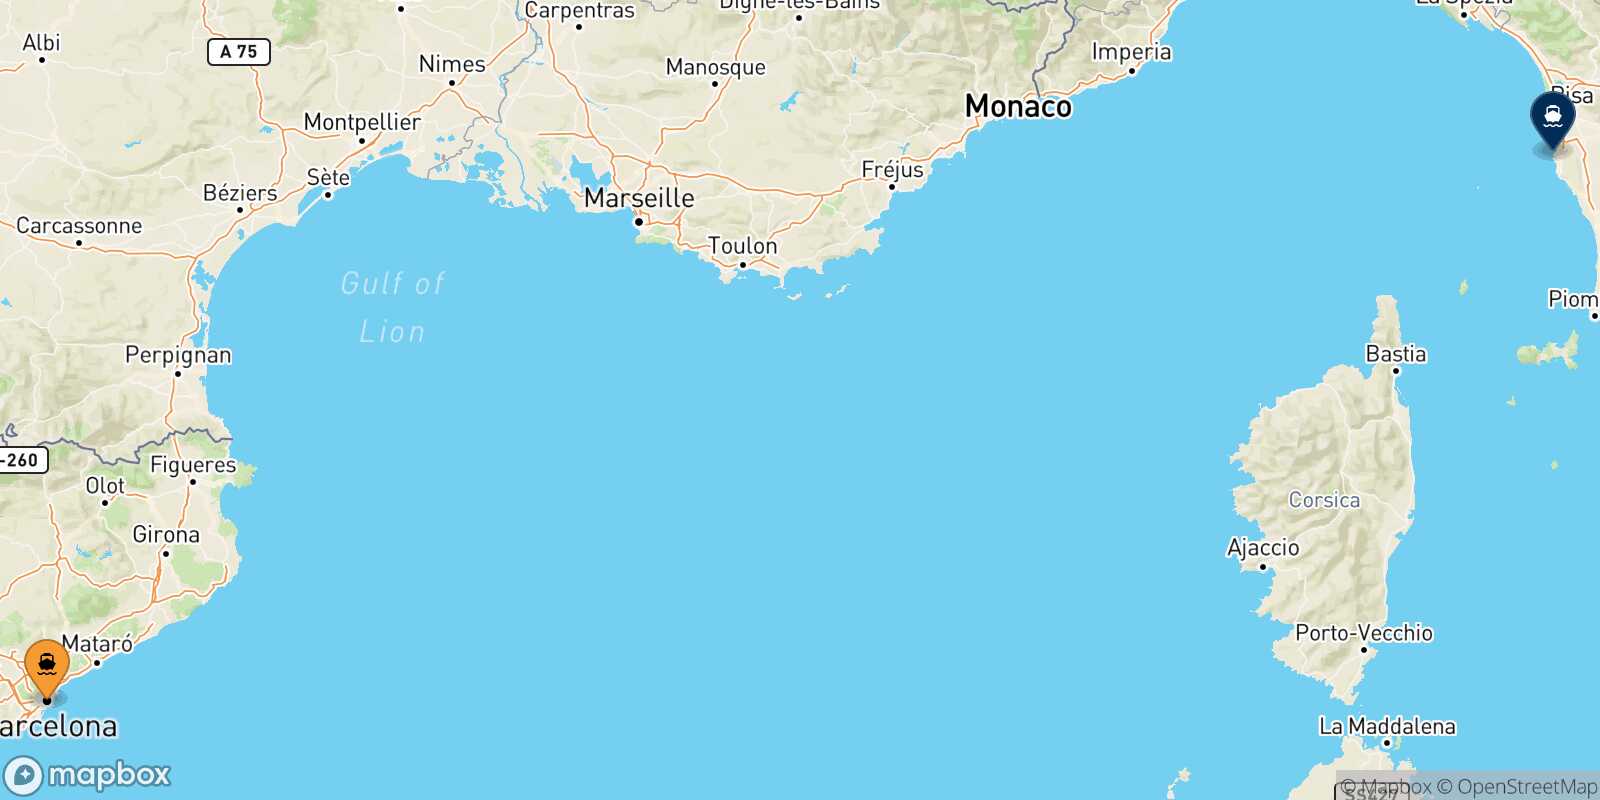 Mappa dei porti collegati con  Livorno